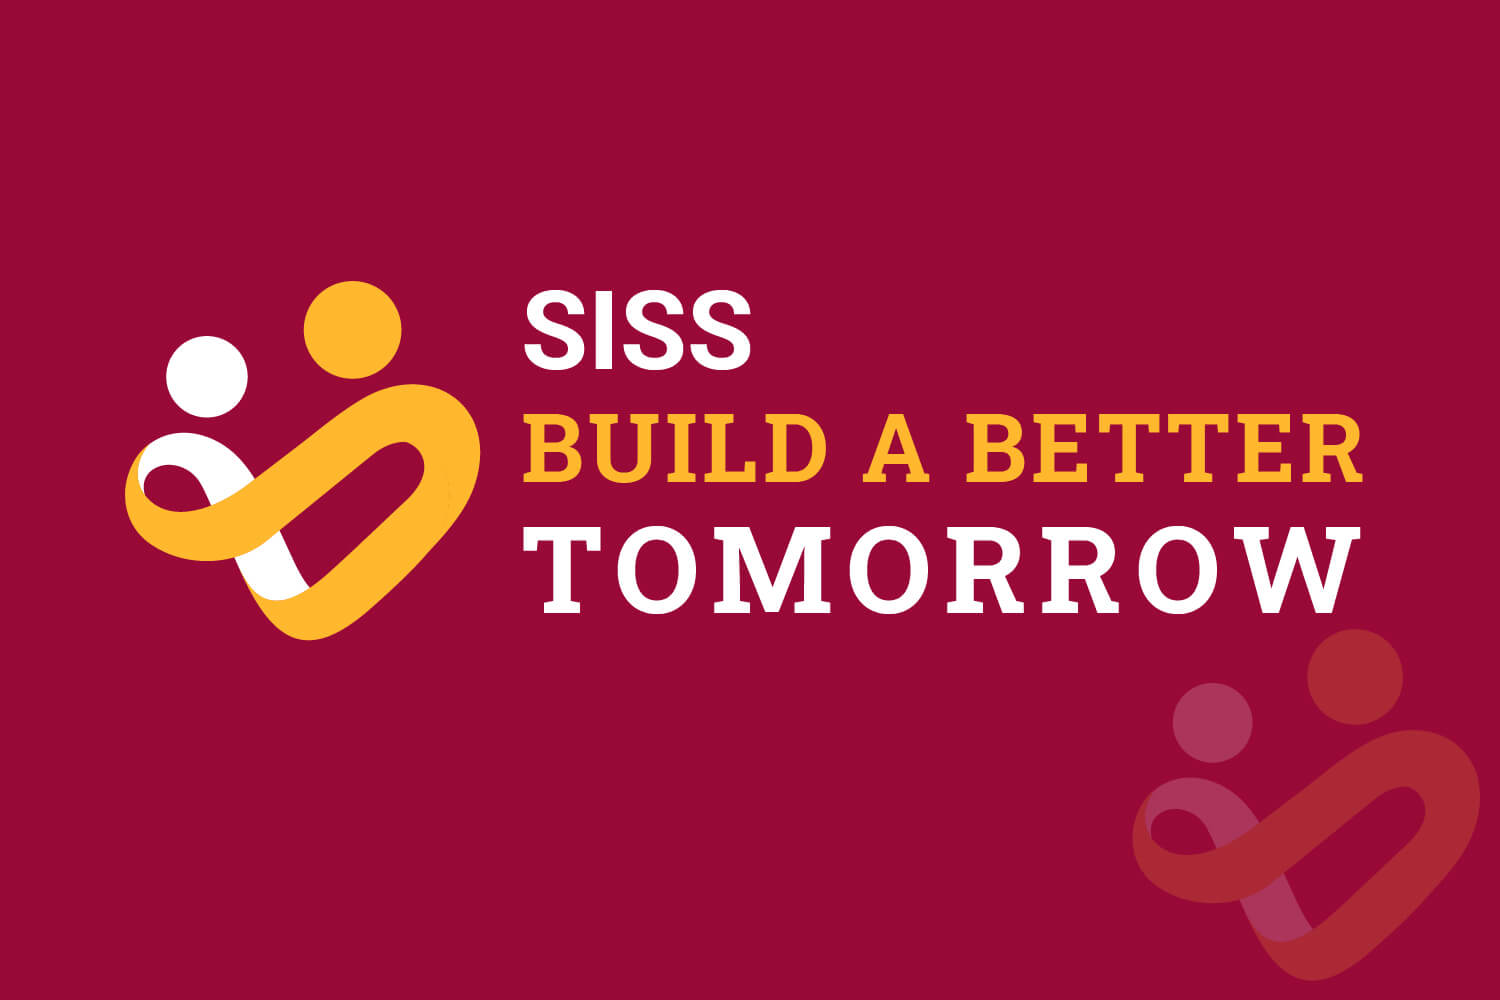 Quỹ vì cộng đồng “Build A Better Tomorrow”